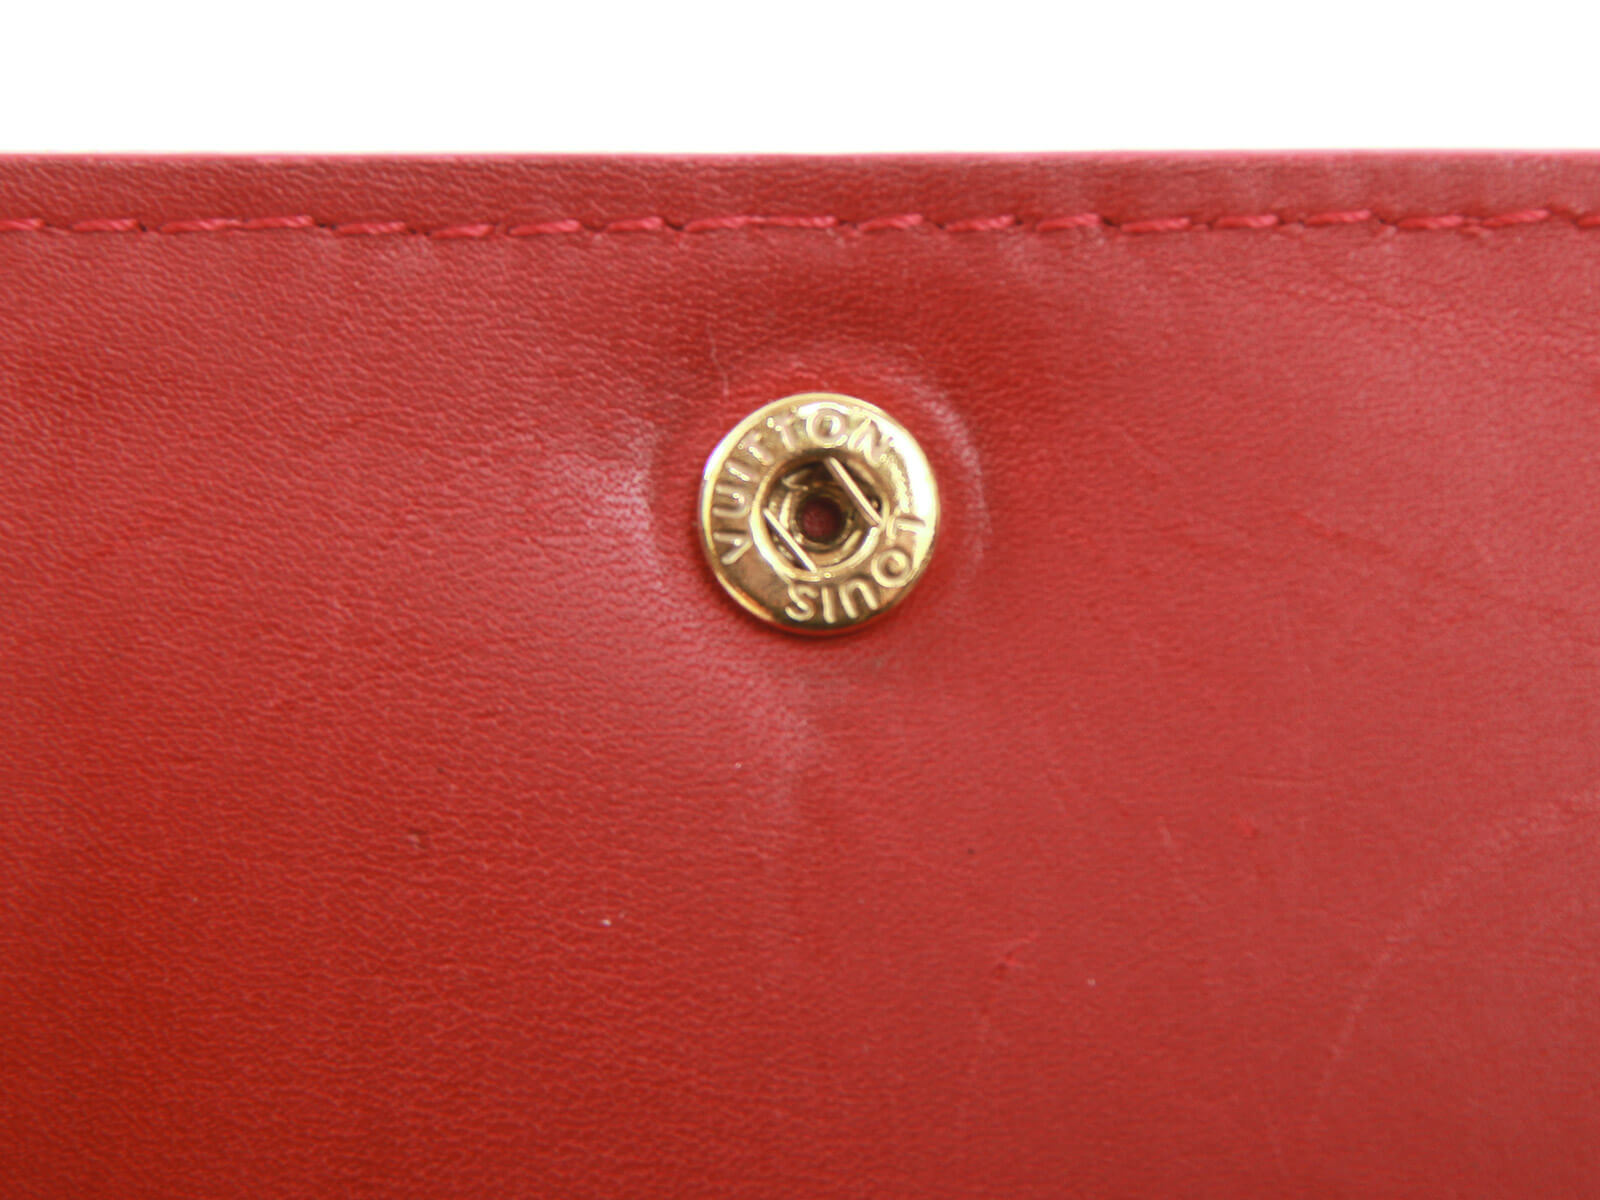 Louis Vuitton Zippy Pomme D'amour Monogram Vernis Wallet LV-1111P-0008